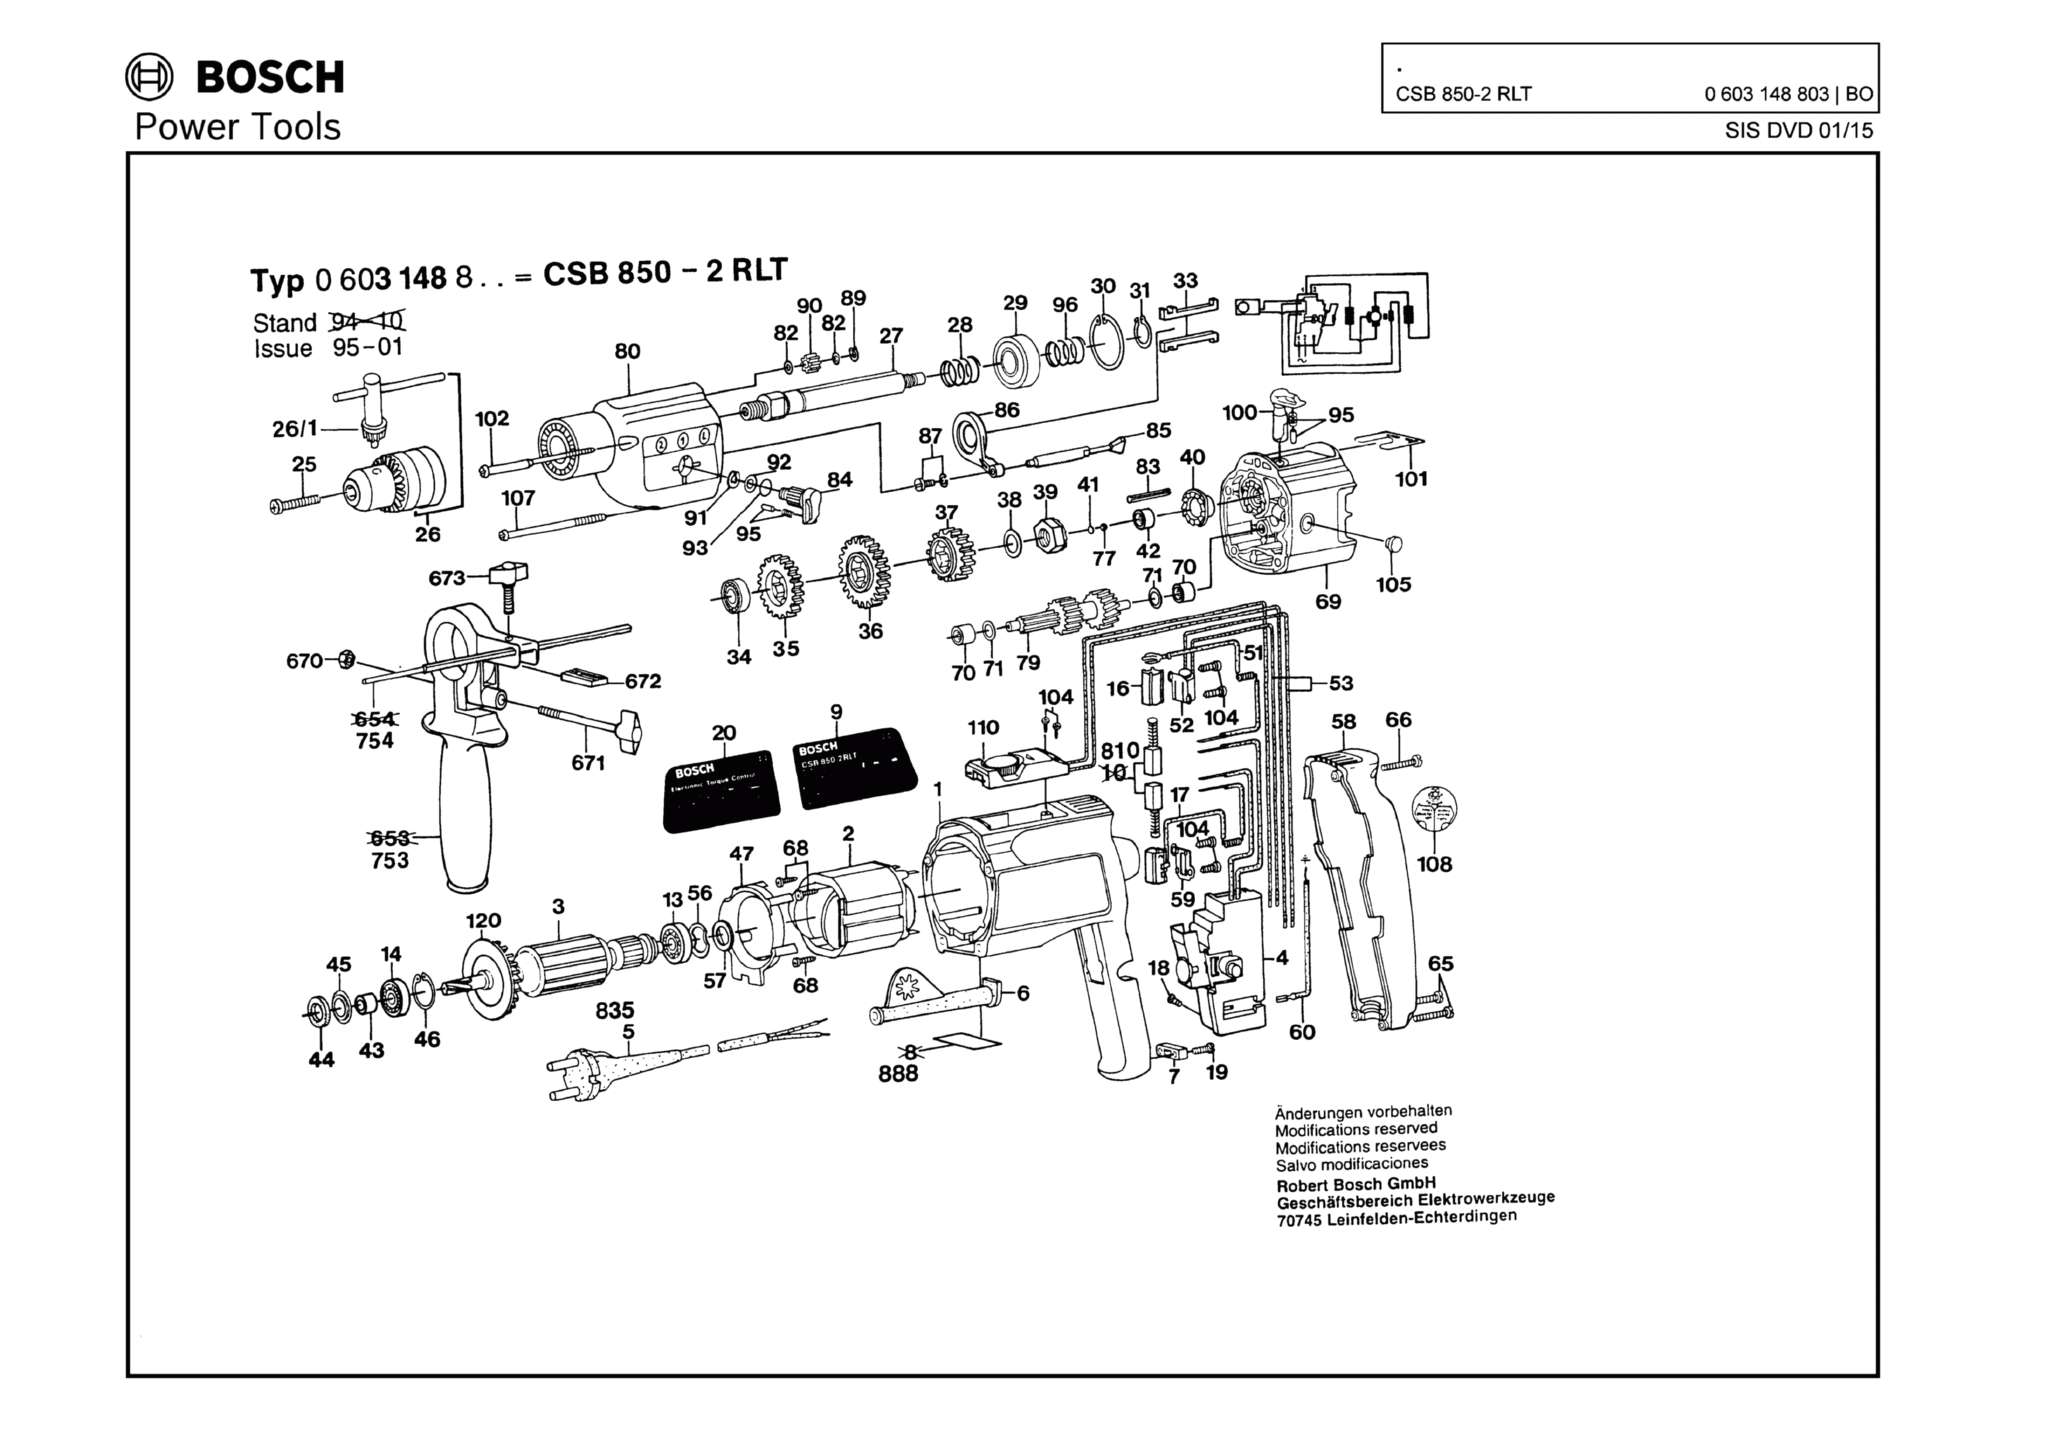 Запчасти, схема и деталировка Bosch CSB 850-2 RLT (ТИП 0603148803)